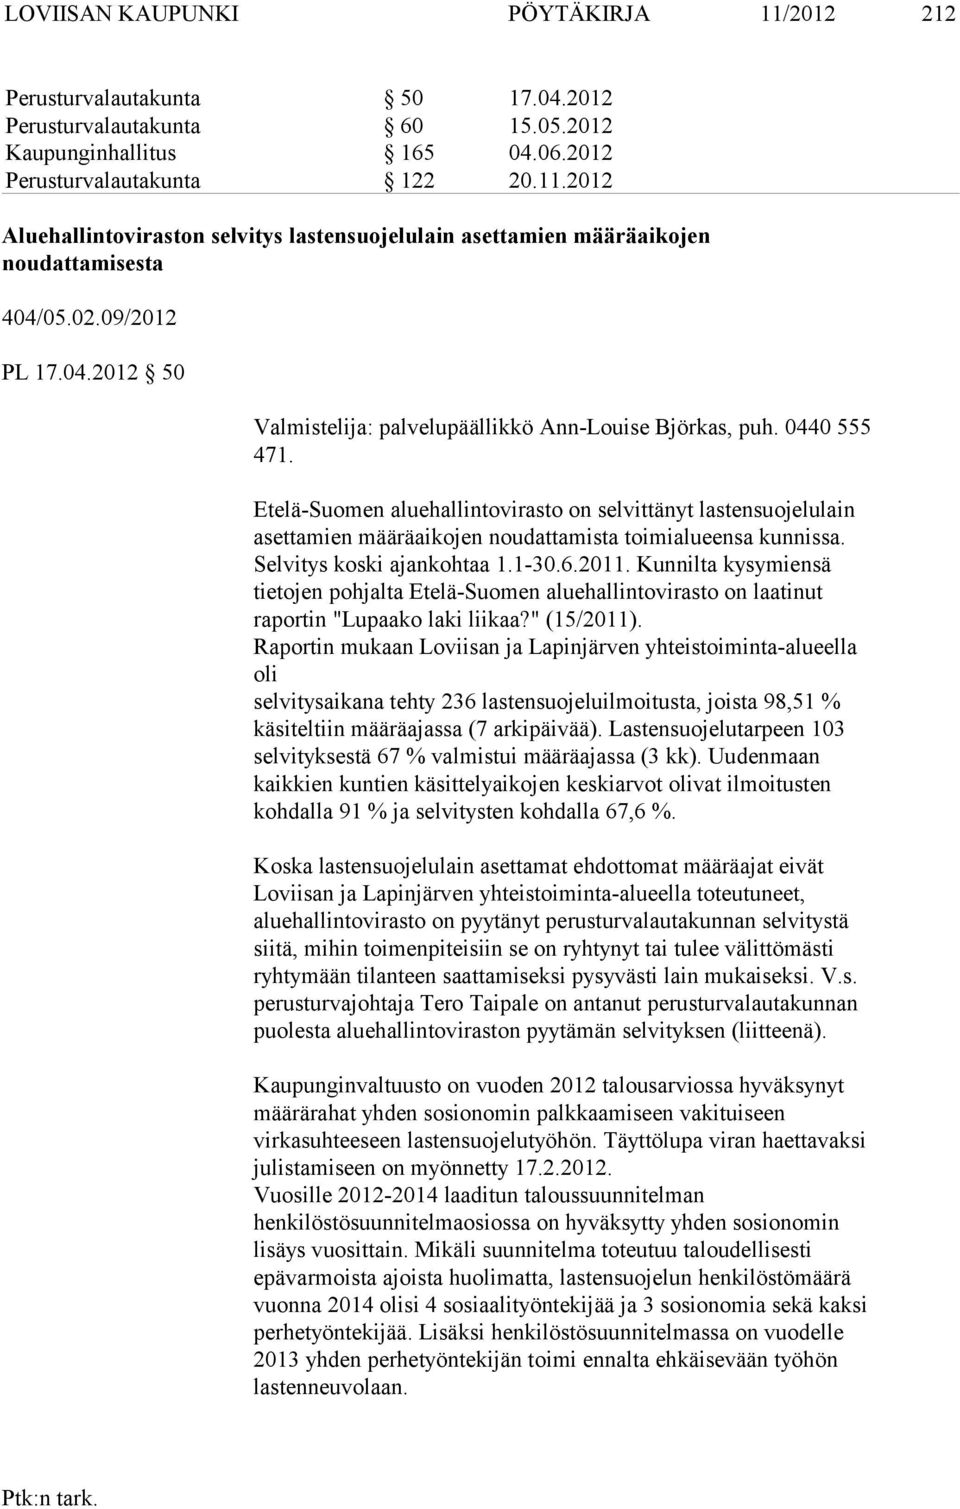 Etelä-Suomen aluehallintovirasto on selvittänyt lastensuojelulain asetta mien määräaikojen noudattamista toimialueensa kunnissa. Selvitys koski ajankohtaa 1.1-30.6.2011.